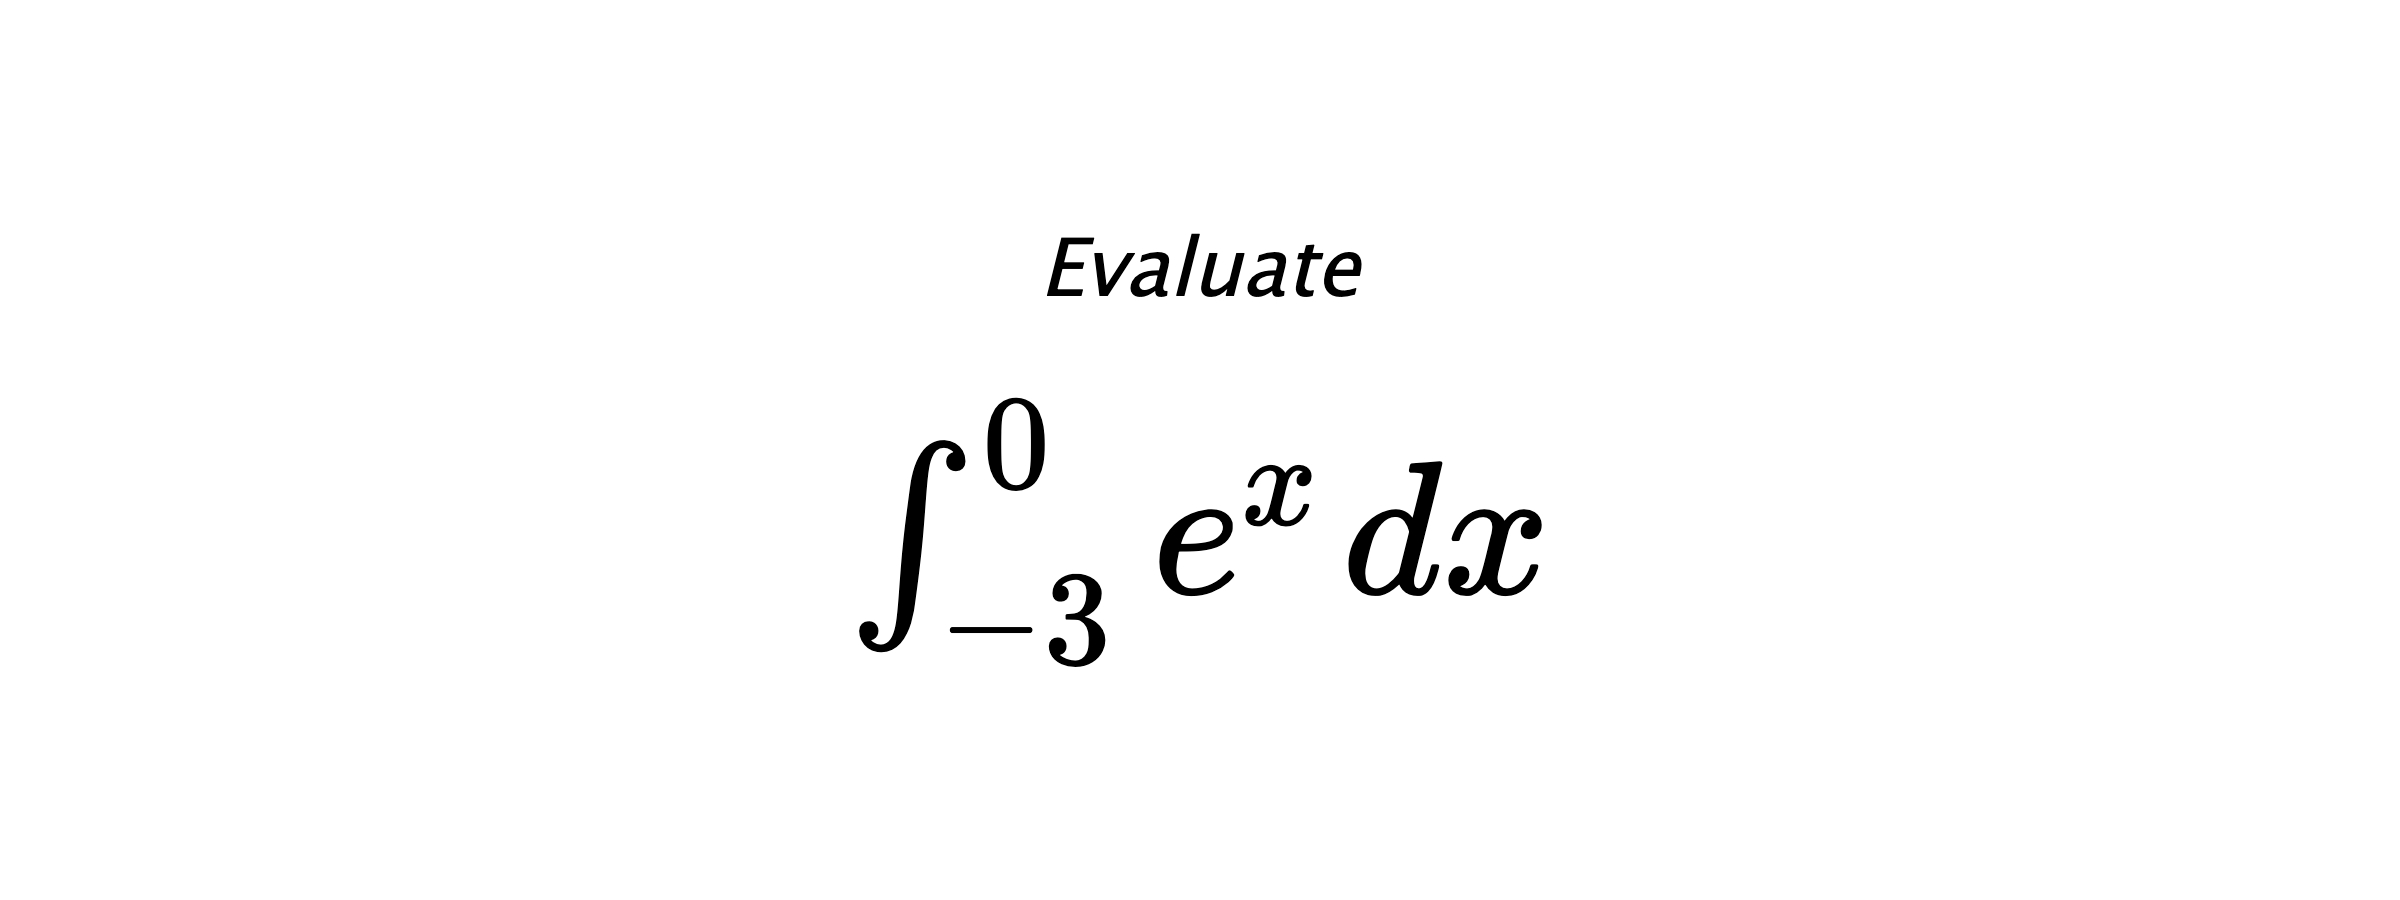 Evaluate $ \int_{-3}^{0} e^{x} \hspace{0.2cm} dx $